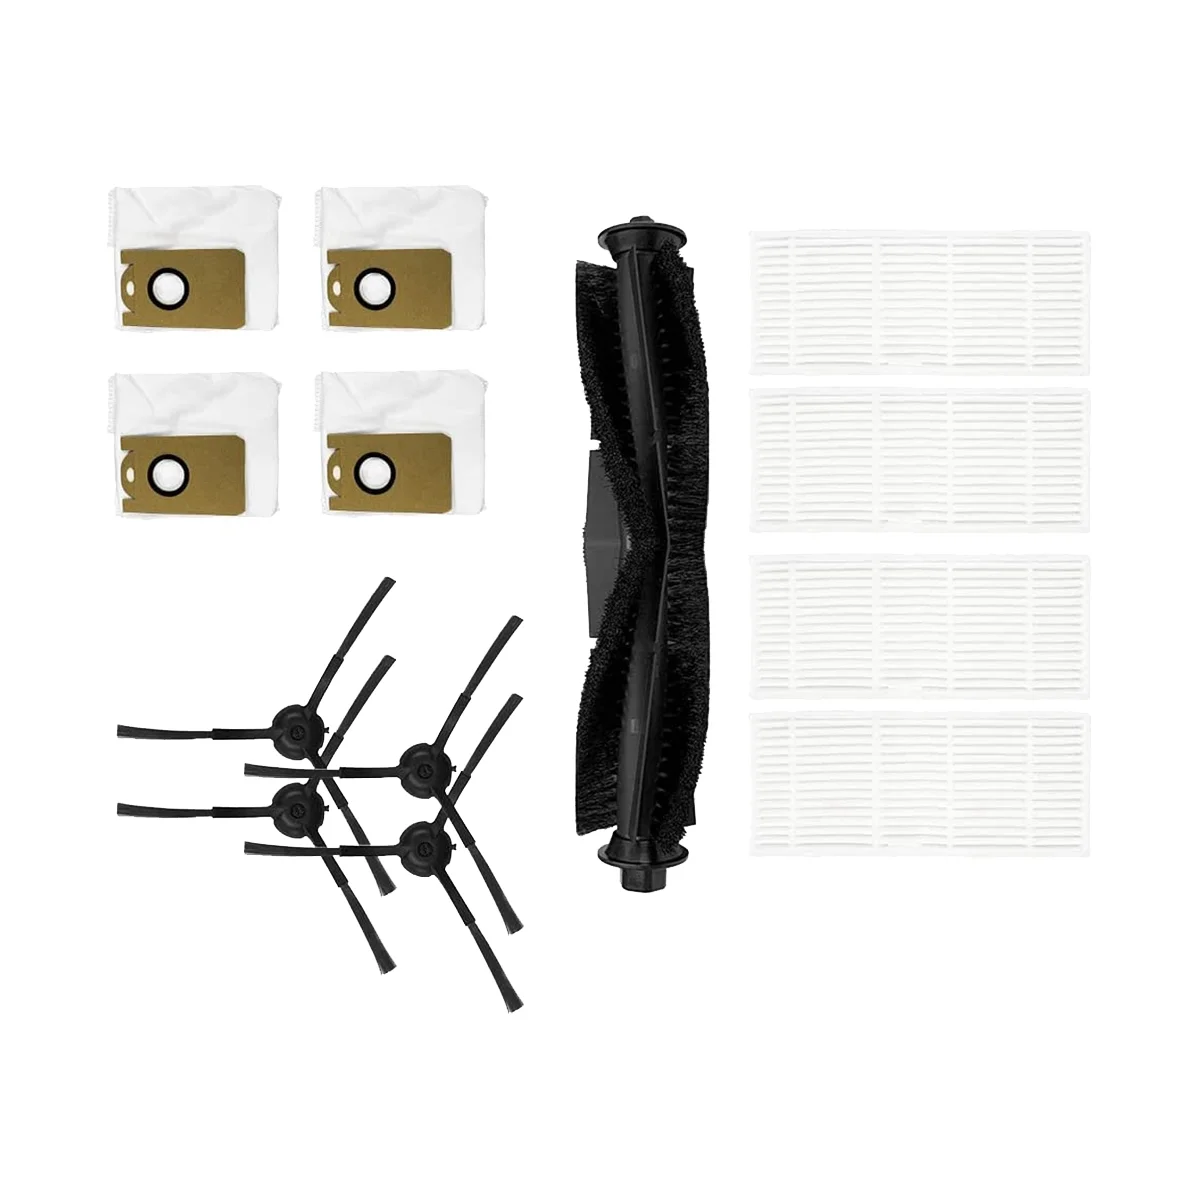 

Фильтры, роликовая щетка, боковые щетки, пылесборники для Ionvac SmartClean V4 RoboVac, для Kyvol Cybovac S31, запчасти, аксессуары